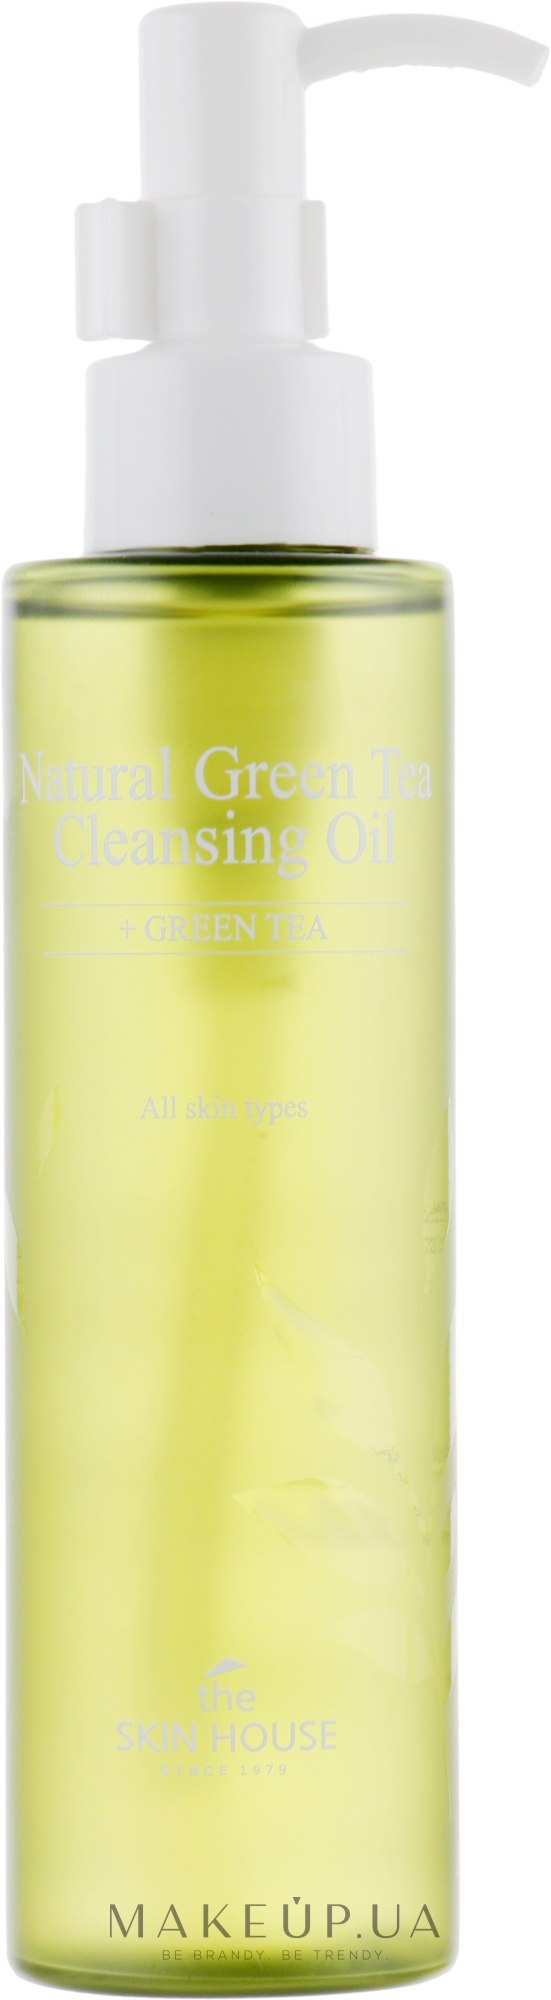 Гидрофильное масло с экстрактом зелёного чая - The Skin House Natural Green Tea Cleansing Oil — фото 150ml